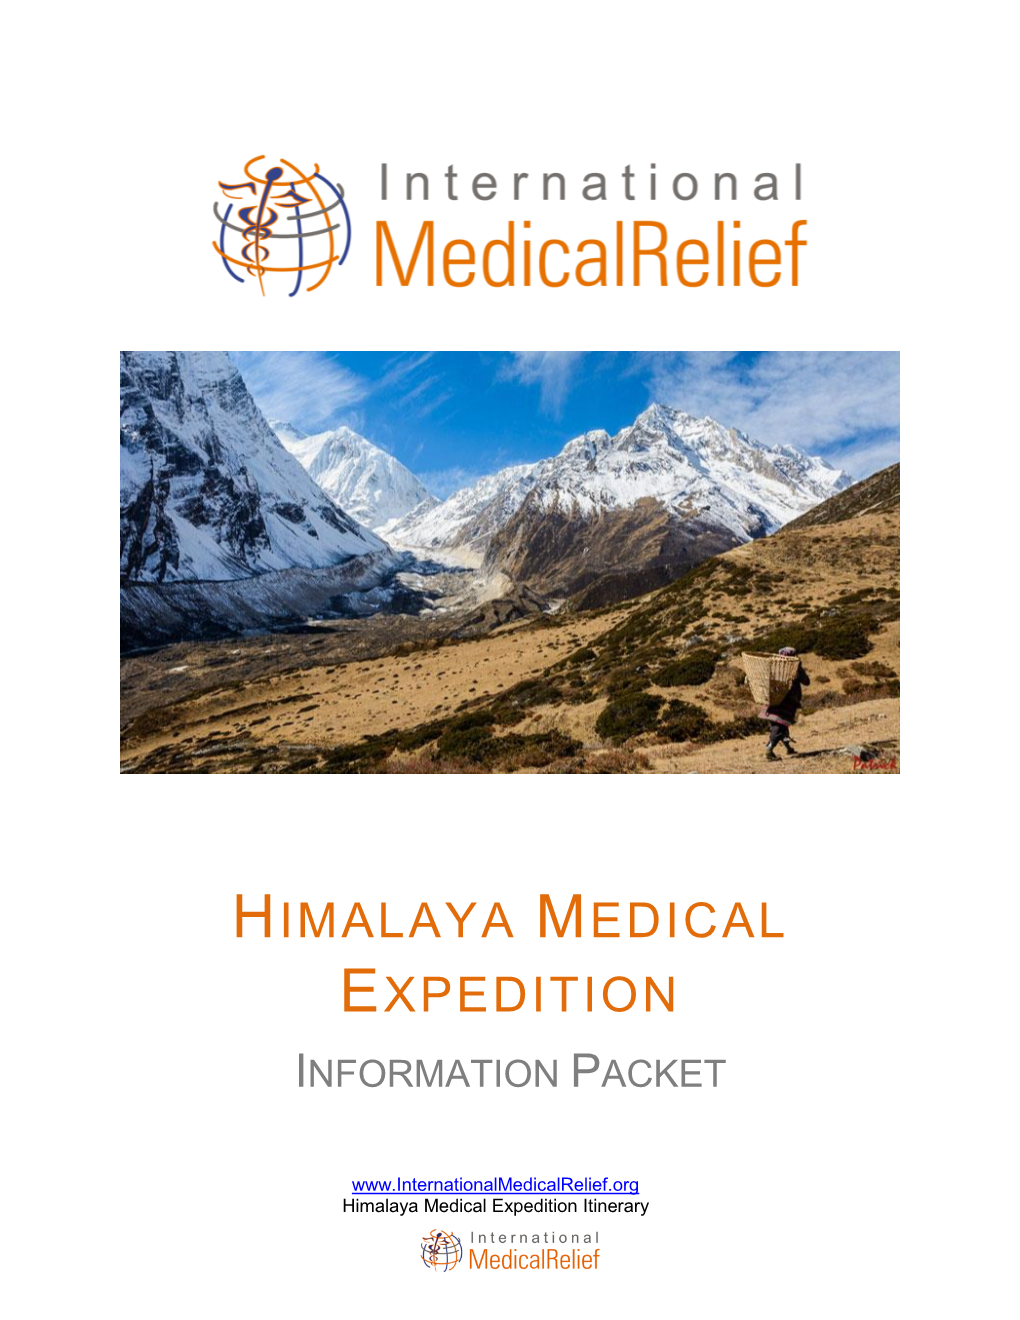 Himalaya Medical Expedition Information Packet